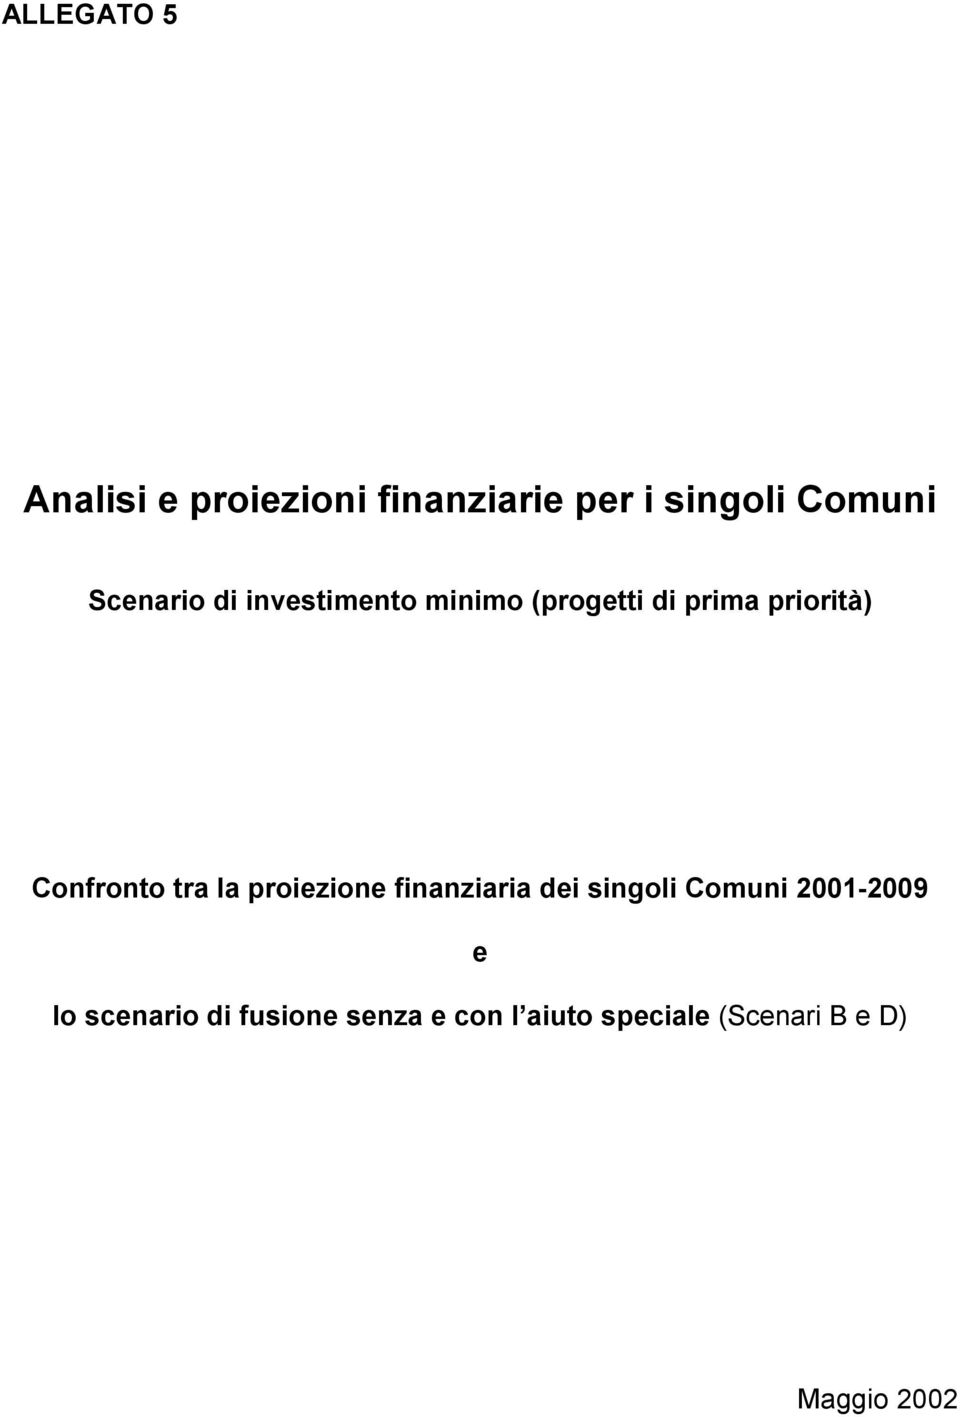 Confronto tra la proiezione finanziaria dei singoli Comuni 2001-2009